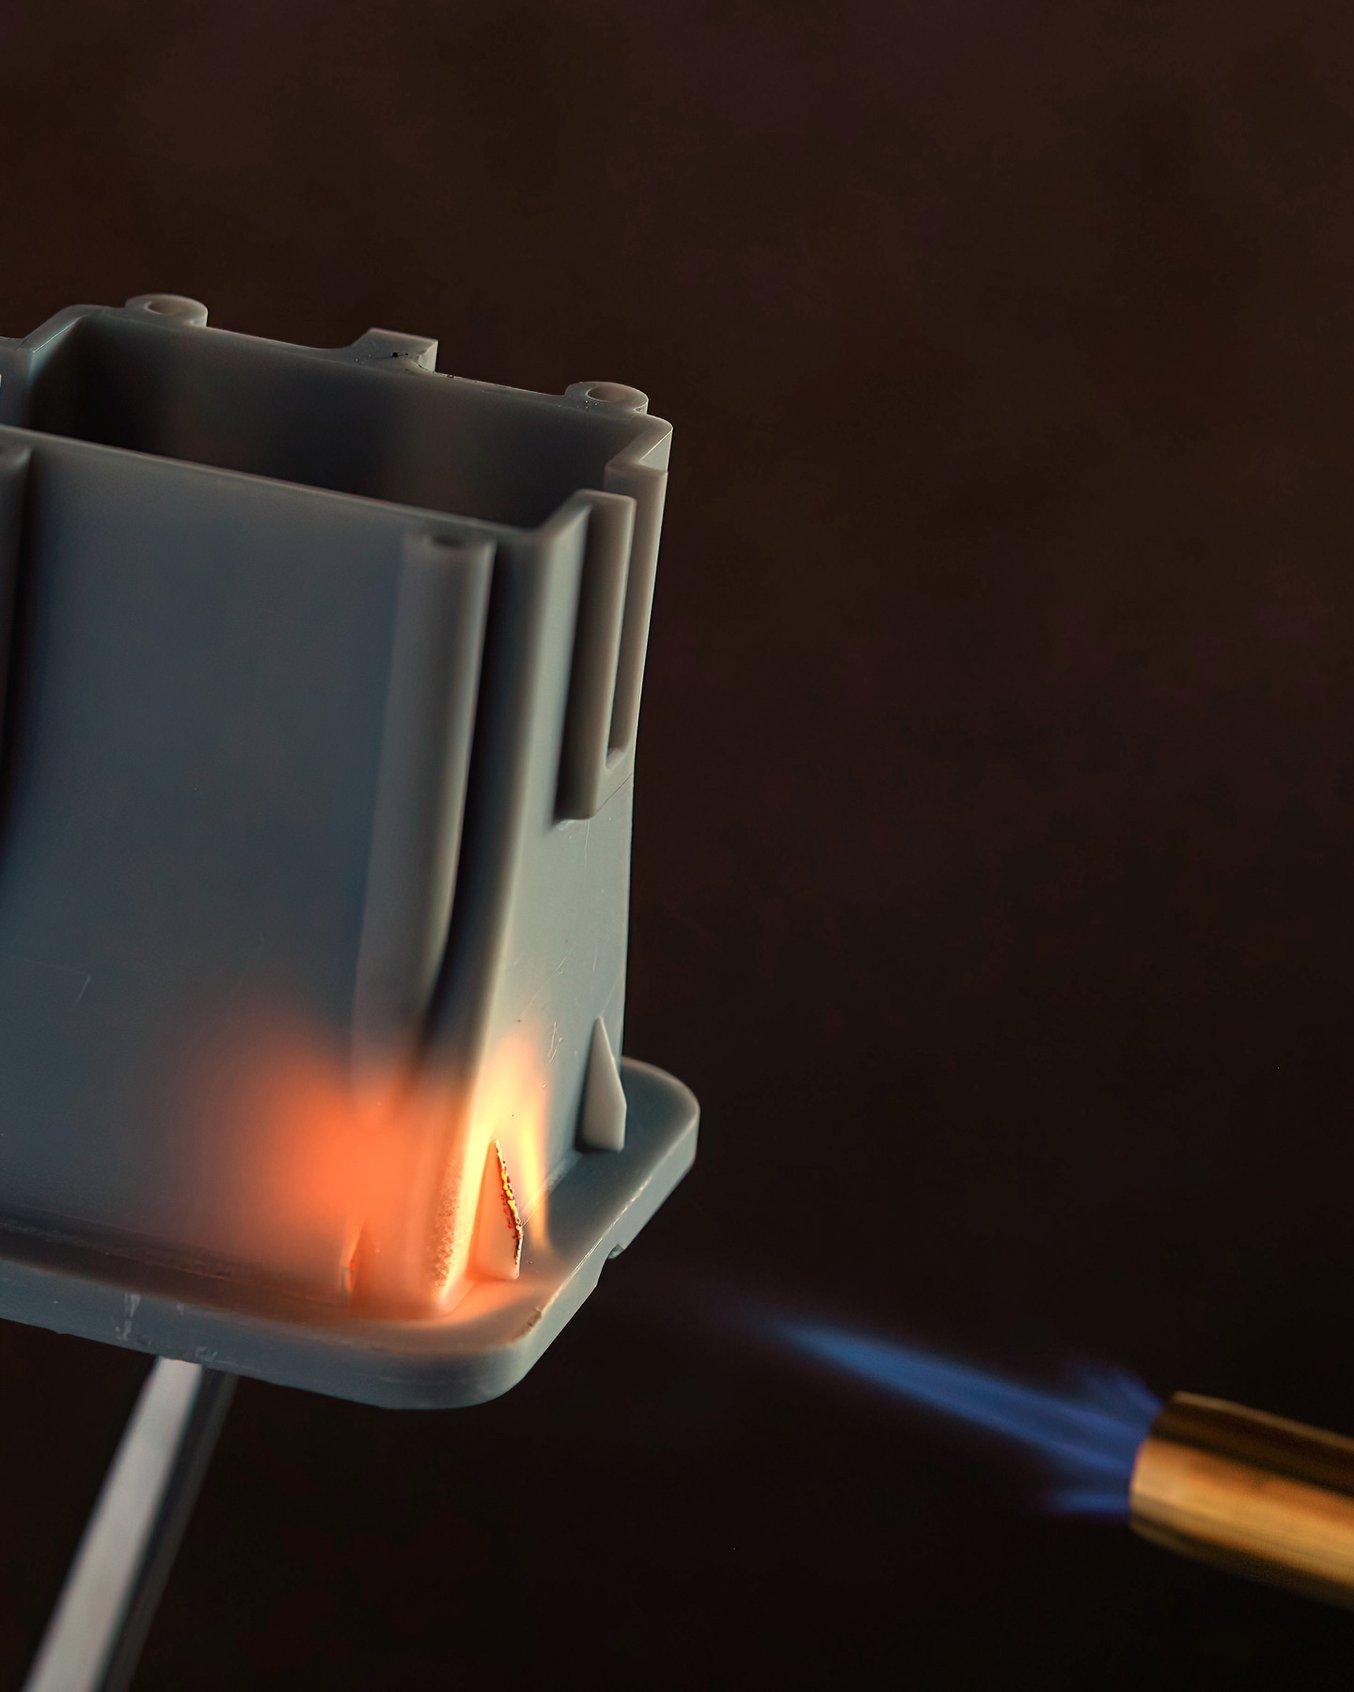 Supporto per elemento riscaldante fabbricato in Flame Retardant Resin sottoposto a una fiamma diretta.